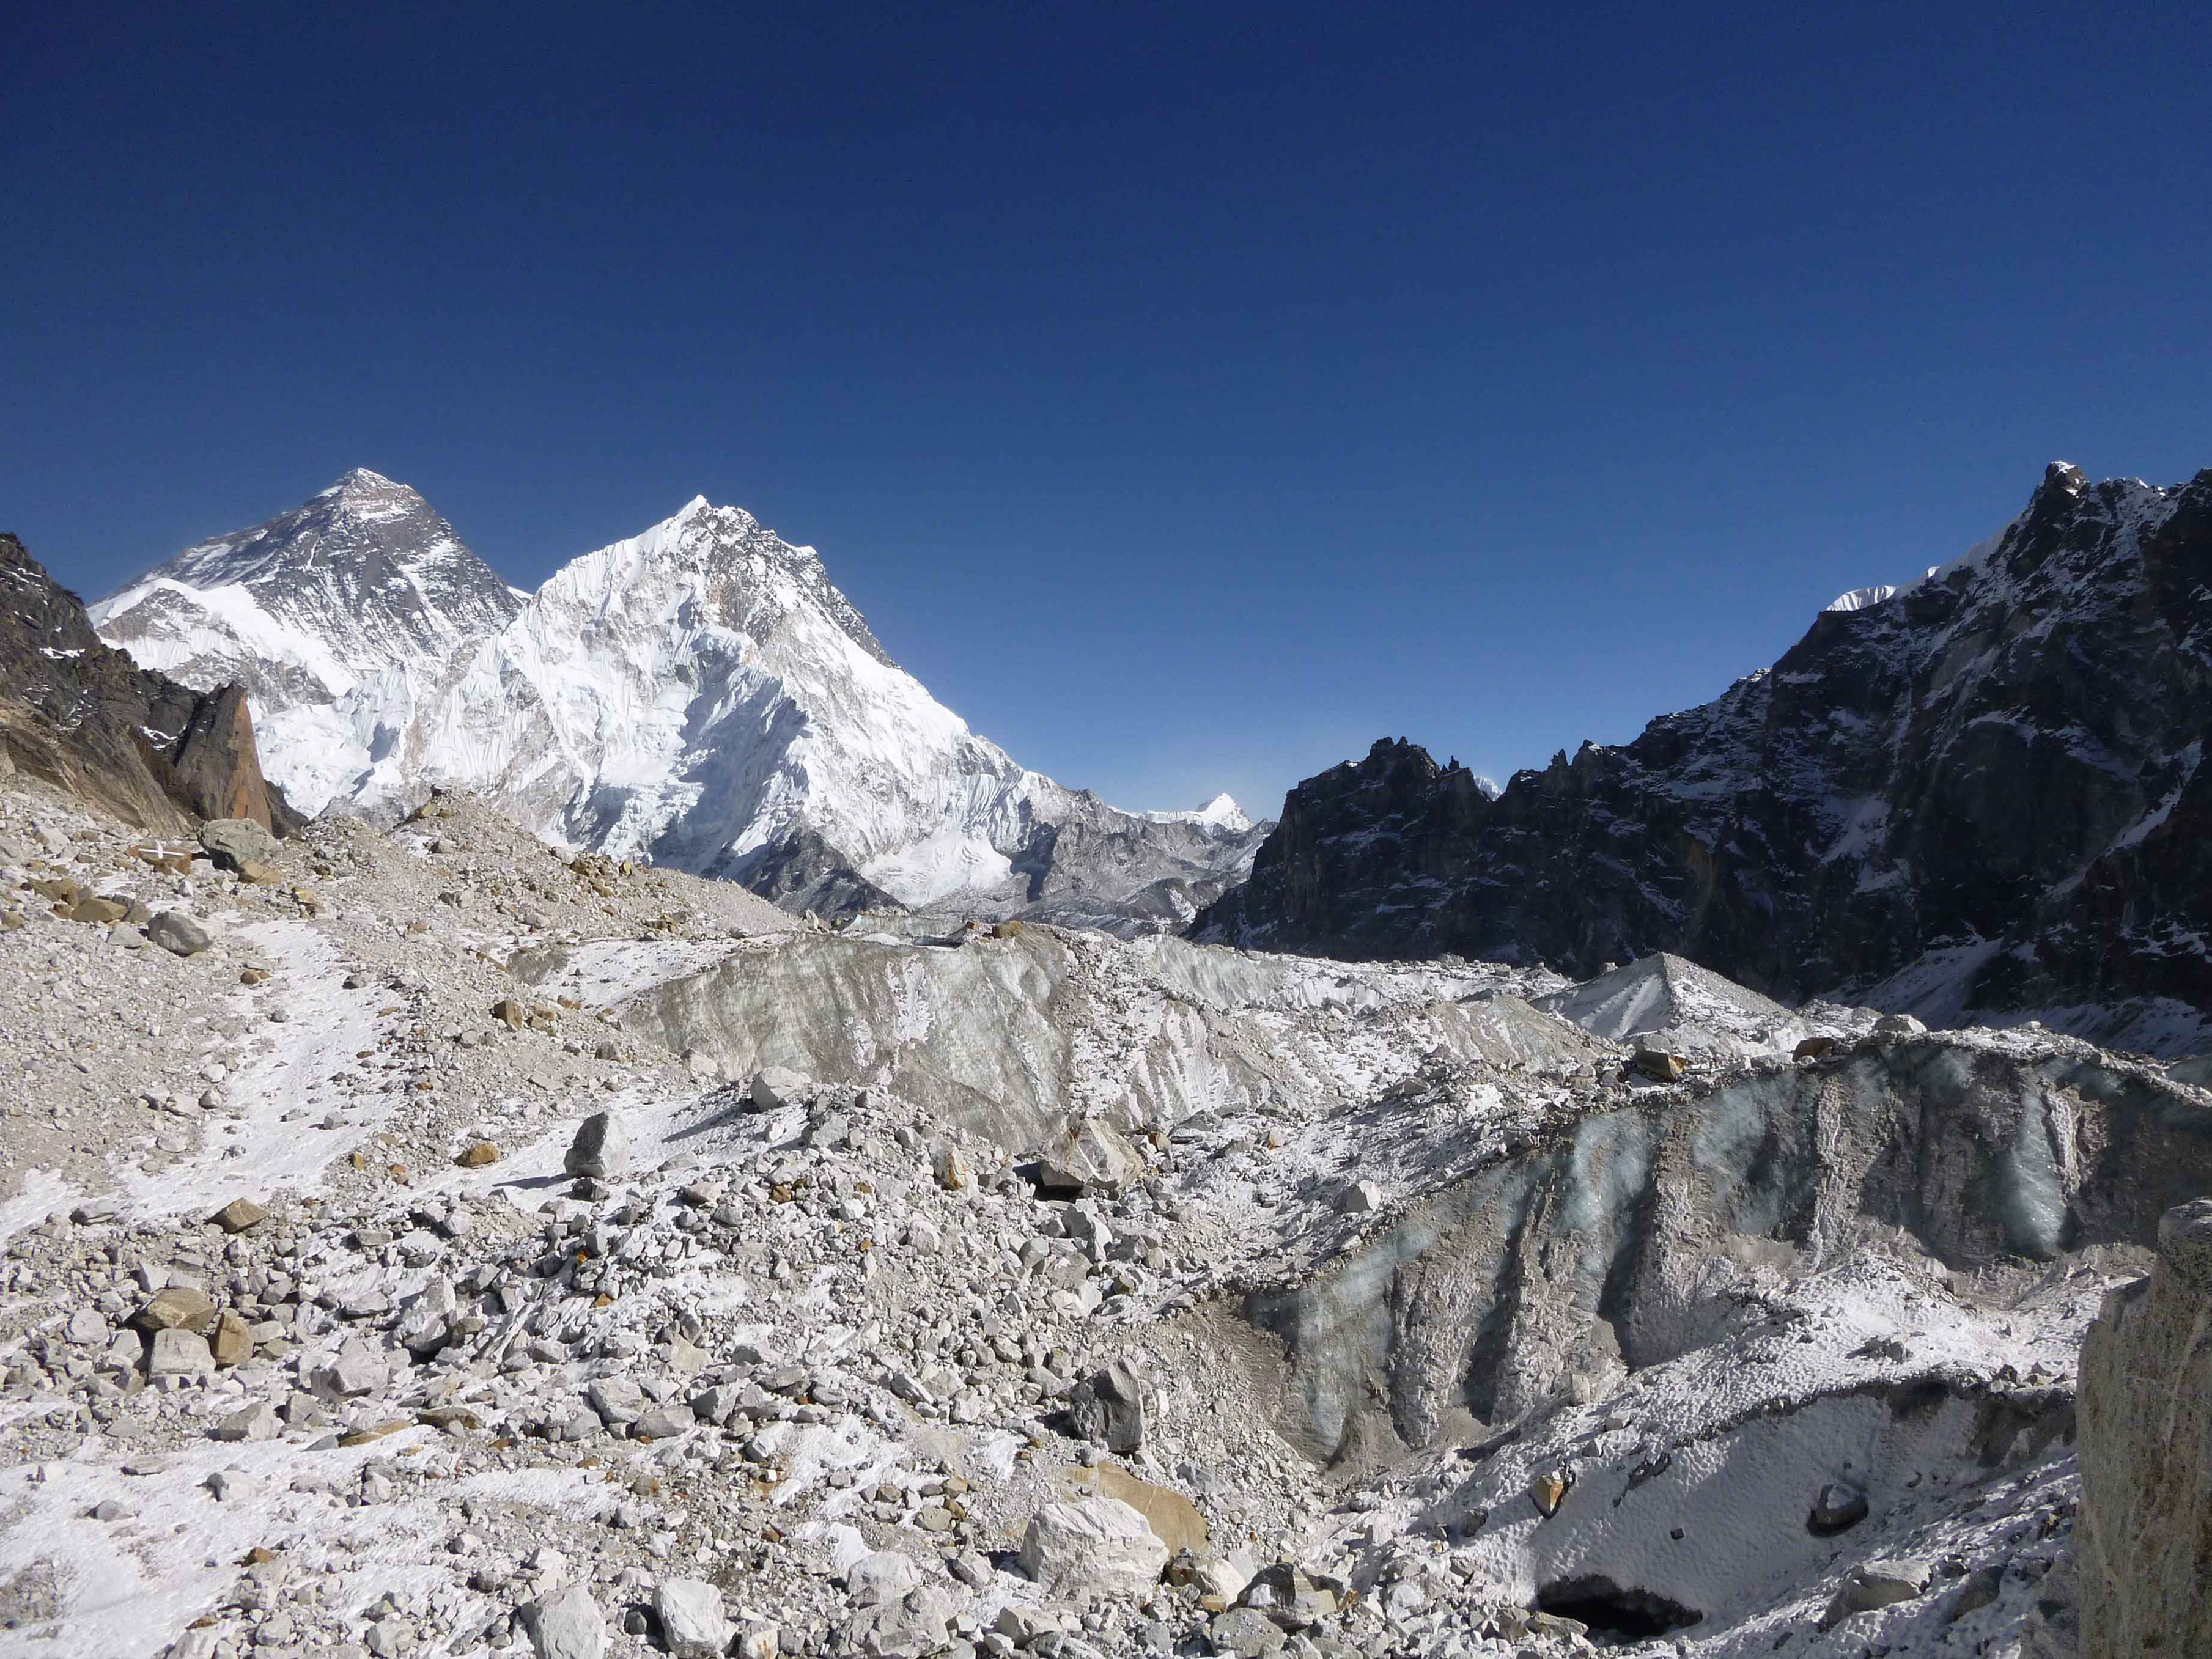 Las imágenes mostraron la magnitud dramática del deshielo en los glaciares ./AP